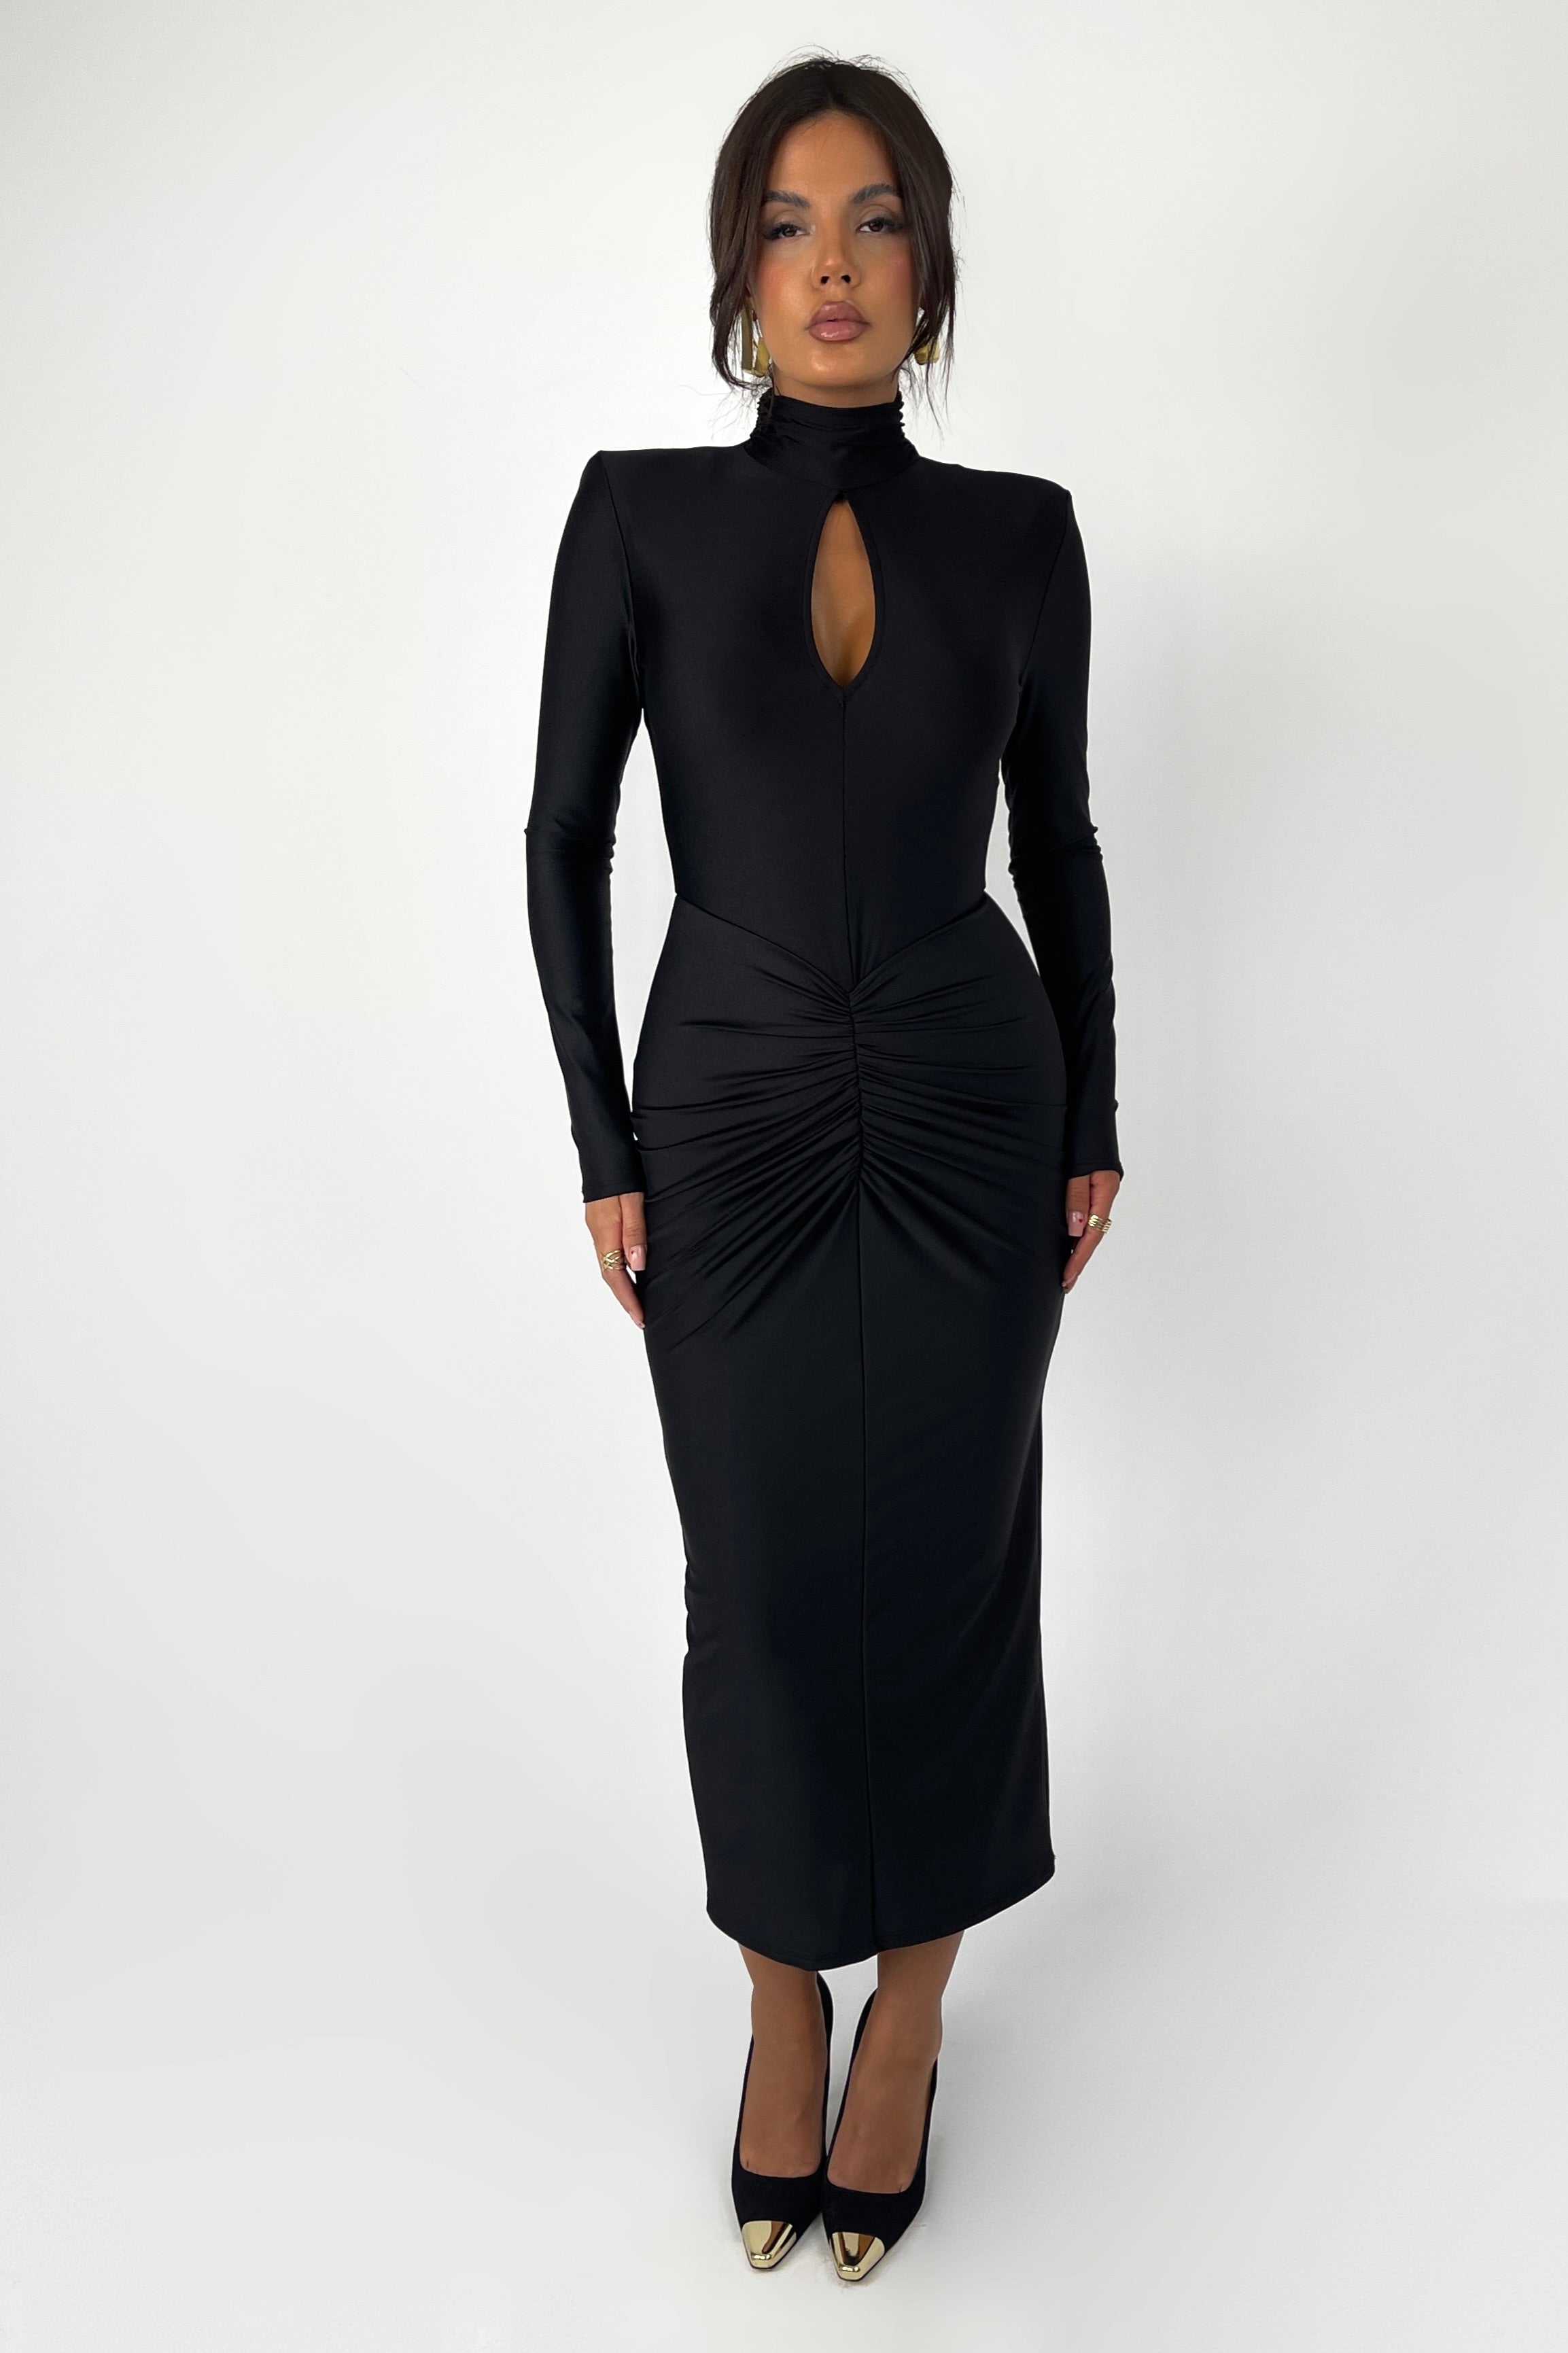 Dolyn Black Dress